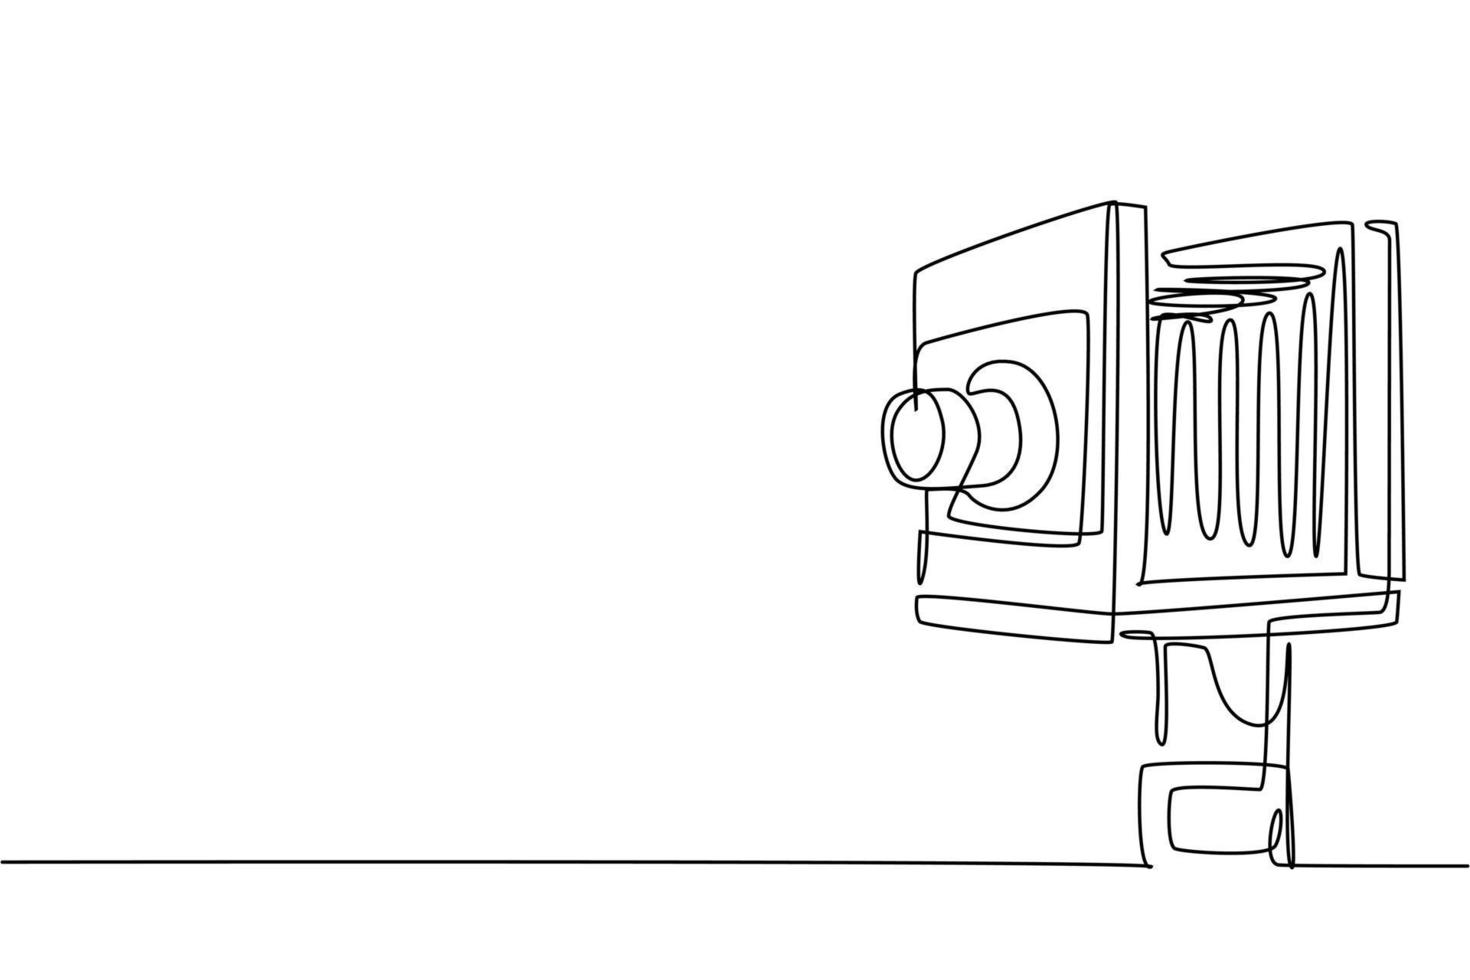 um desenho de linha contínuo de formato médio de câmera de filme retrô antigo antigo. vintage clássico antigo conceito de equipamento de fotografia linha única desenhar design gráfico ilustração vetorial vetor